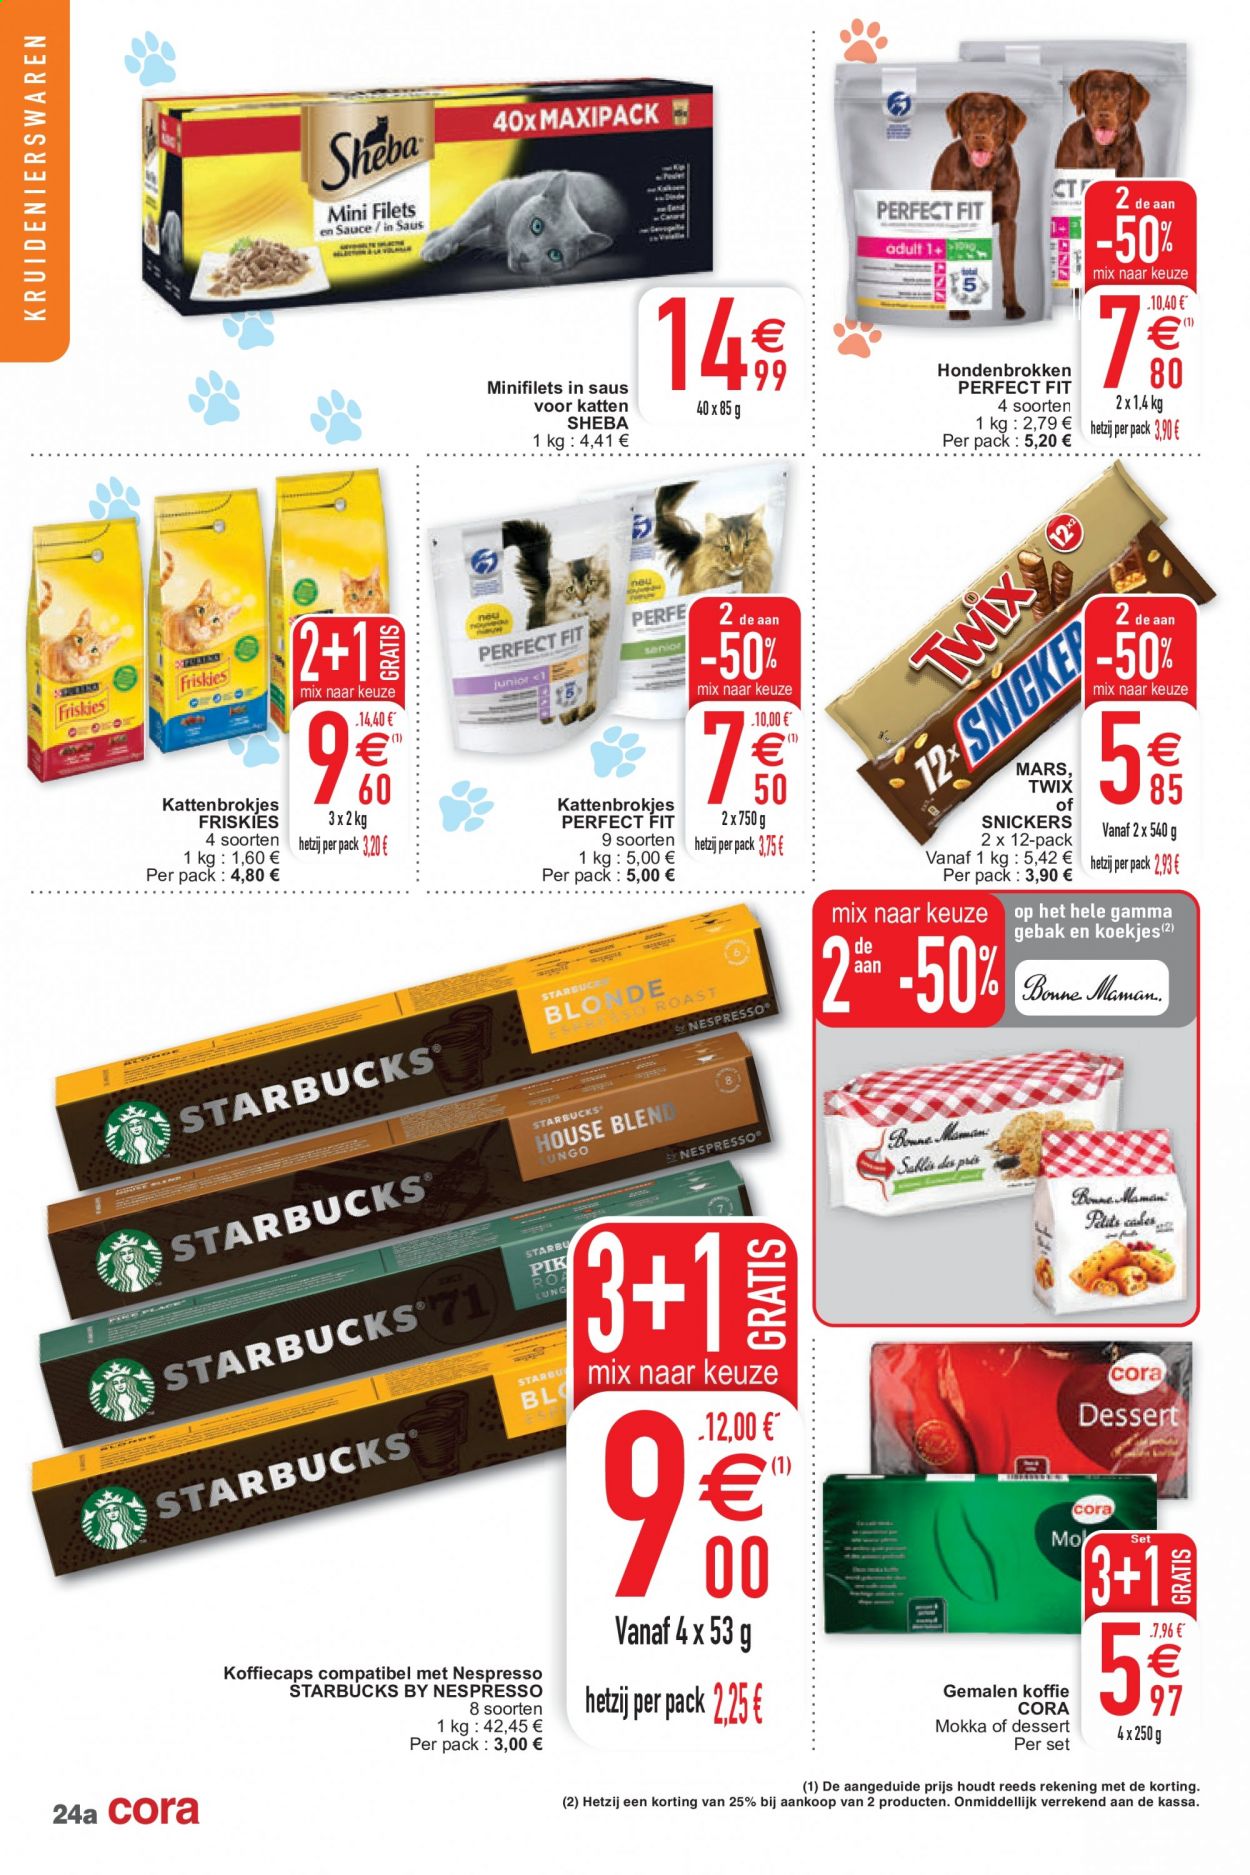 thumbnail - Cora-aanbieding - 09/02/2021 - 15/02/2021 -  producten in de aanbieding - koekjes, koffie, Snickers, Nespresso, Gamma. Pagina 24.